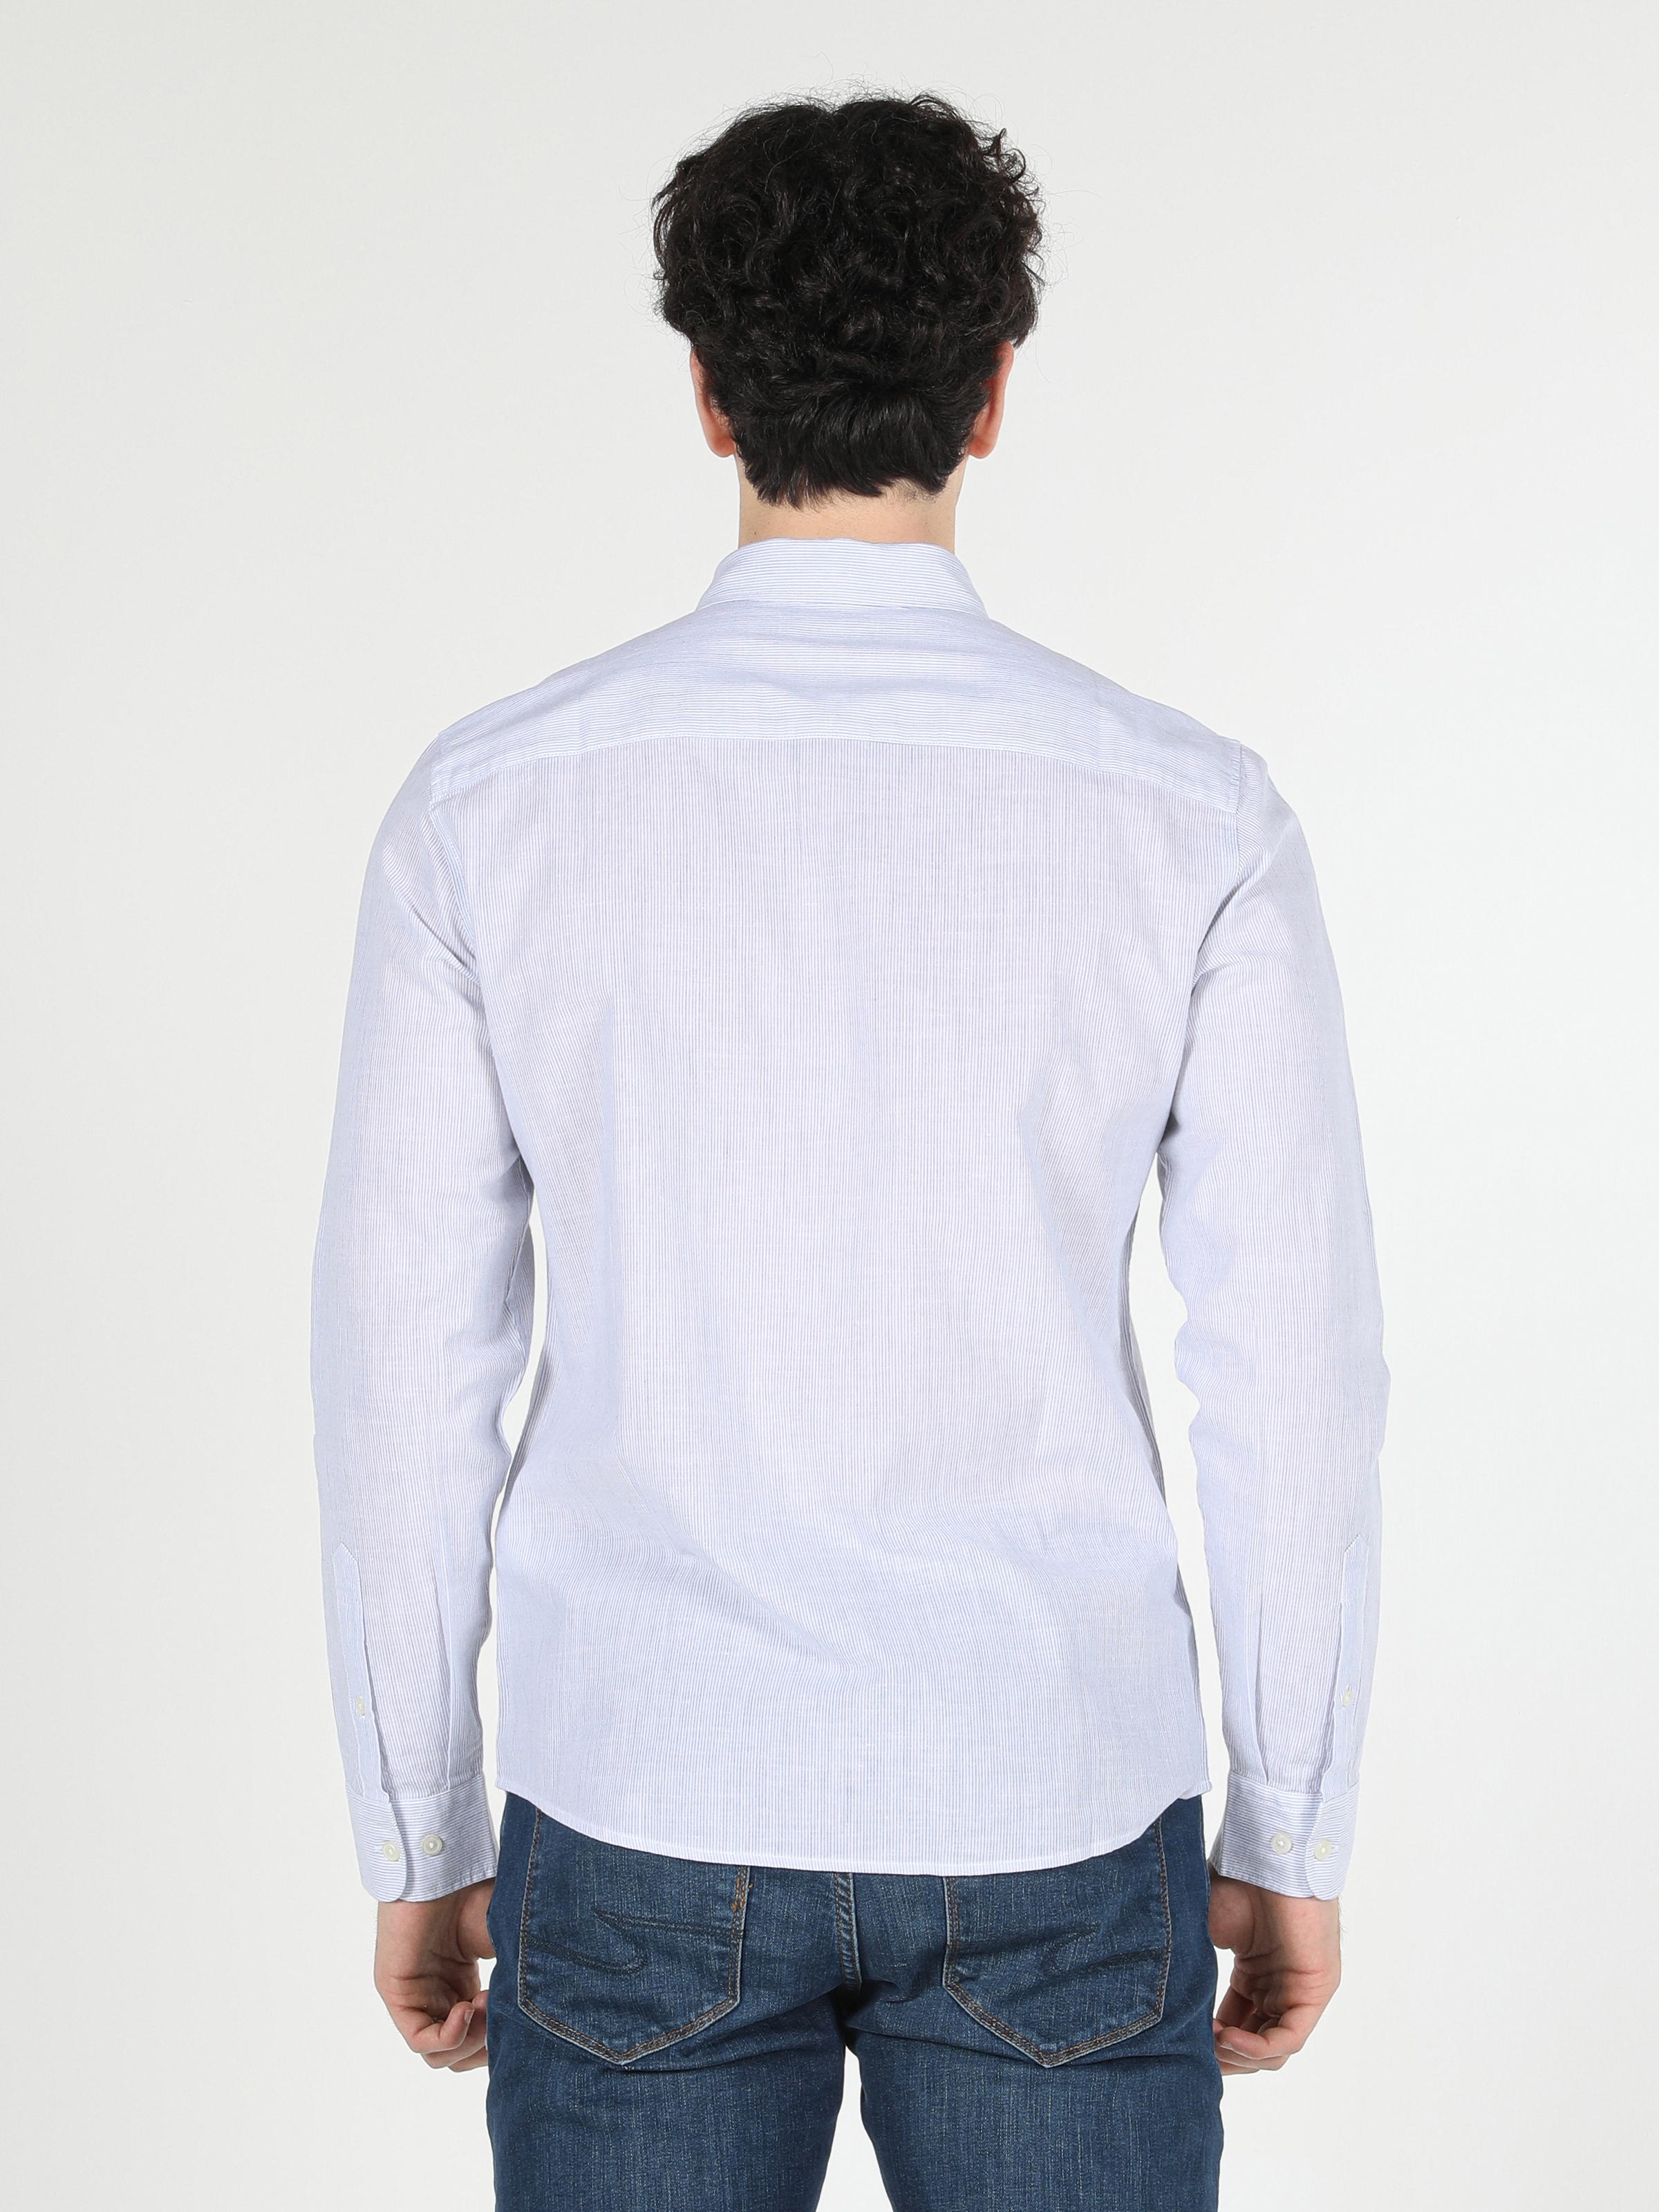 Afficher les détails de Chemise Bleue À Manches Longues Pour Hommes, Coupe Slim